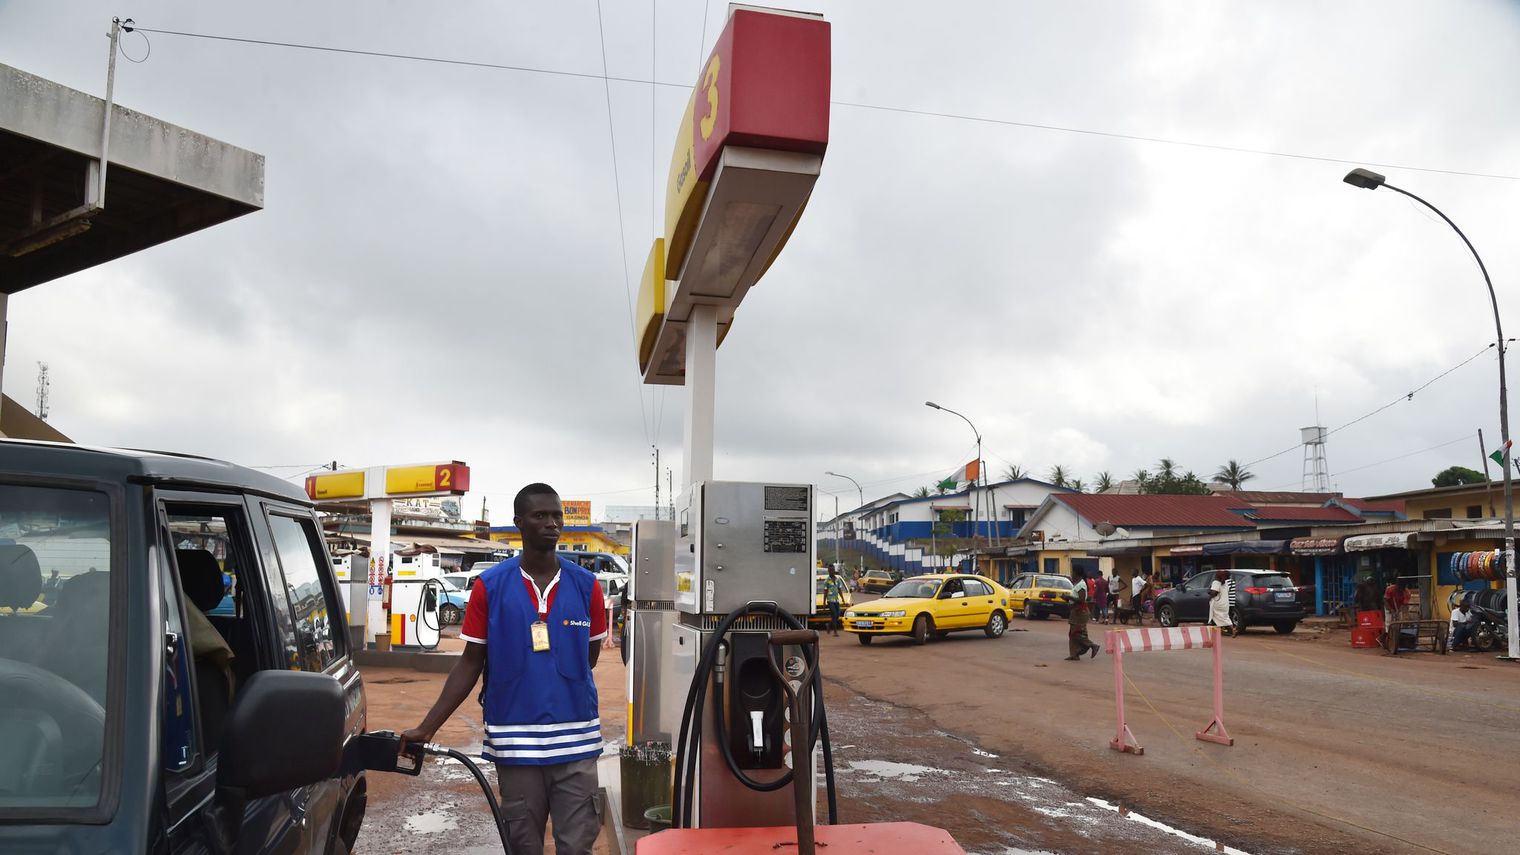 CONTINENT POUBELLE - Les négociants suisses inondent l’Afrique de carburants toxiques